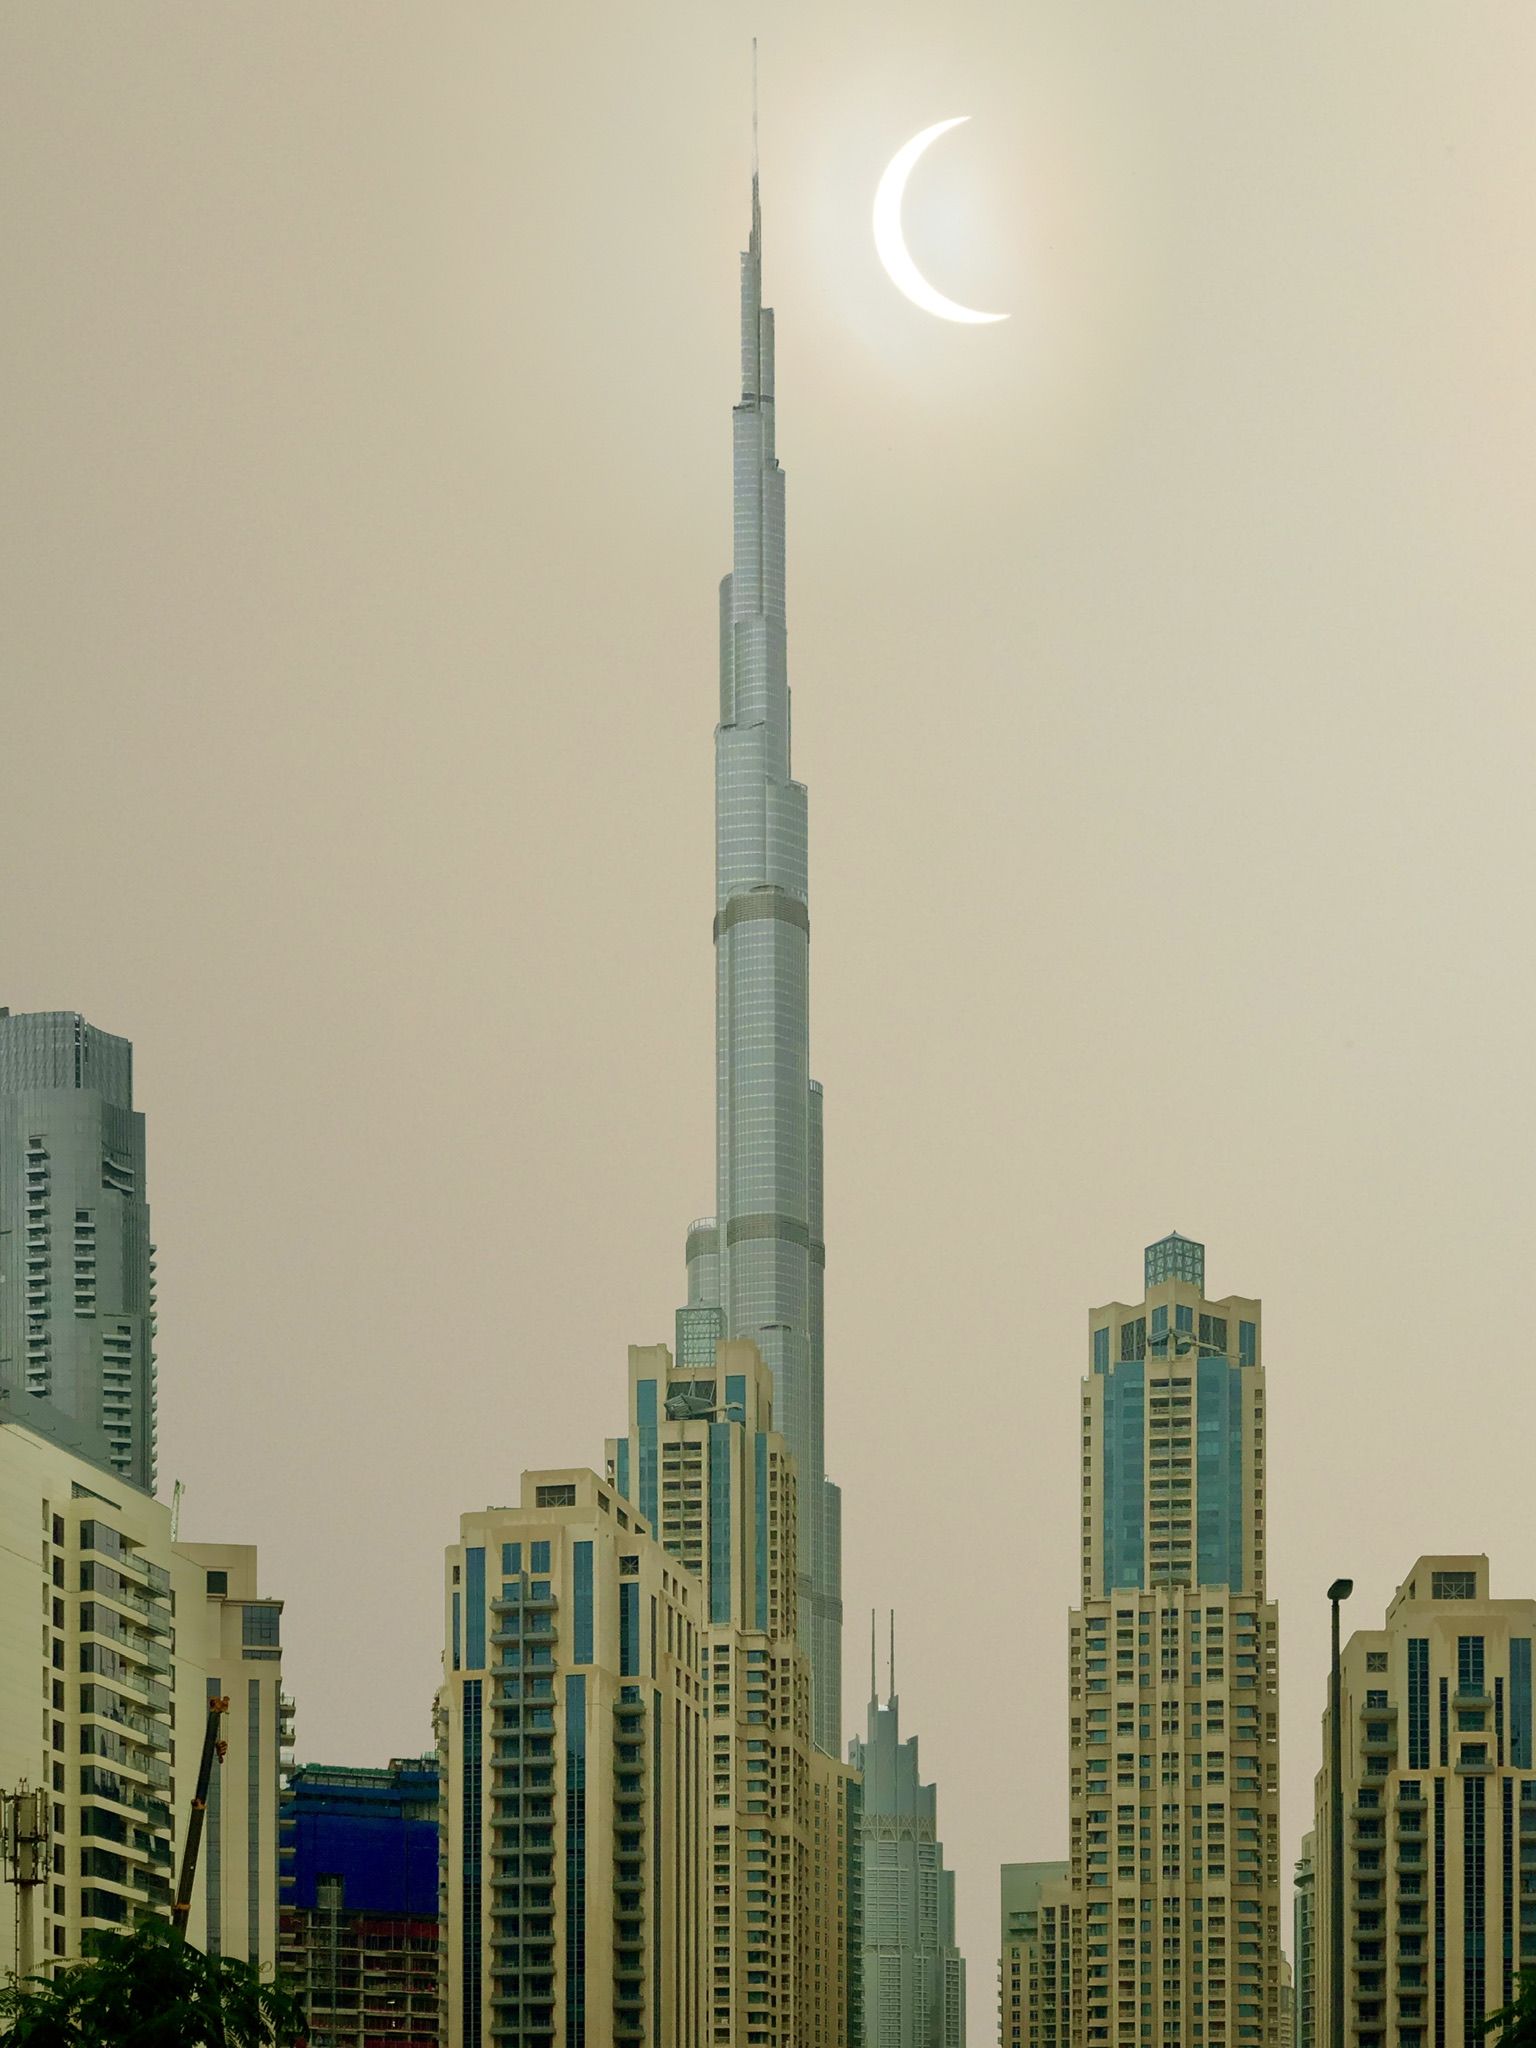 Solae exlipse & Burj Khalifa